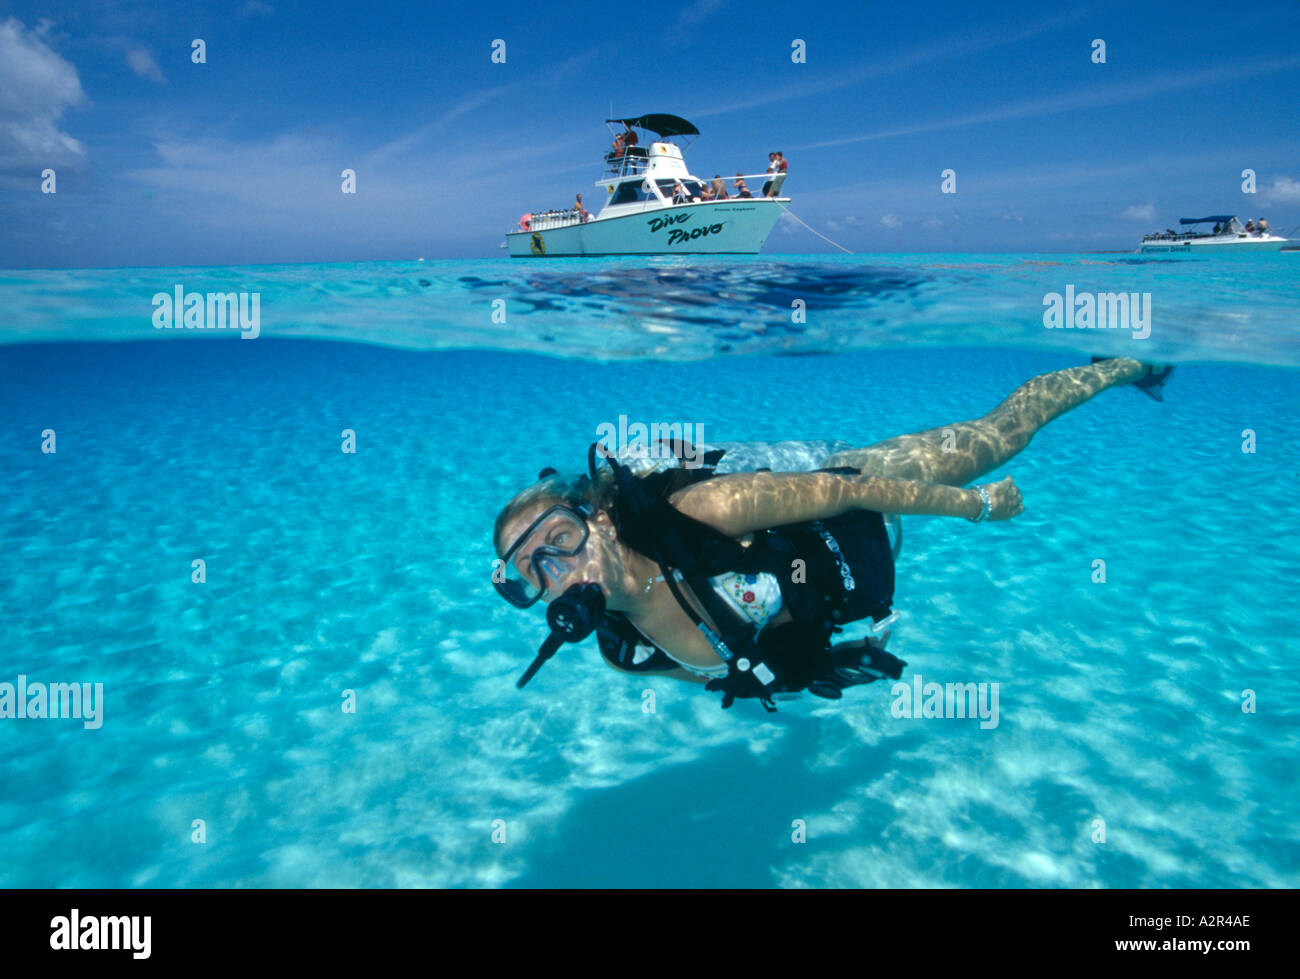 Îles Turks Caicos Providenciales Sagesse Avril avec équipement de plongée nage loin de bateau de plongée Banque D'Images